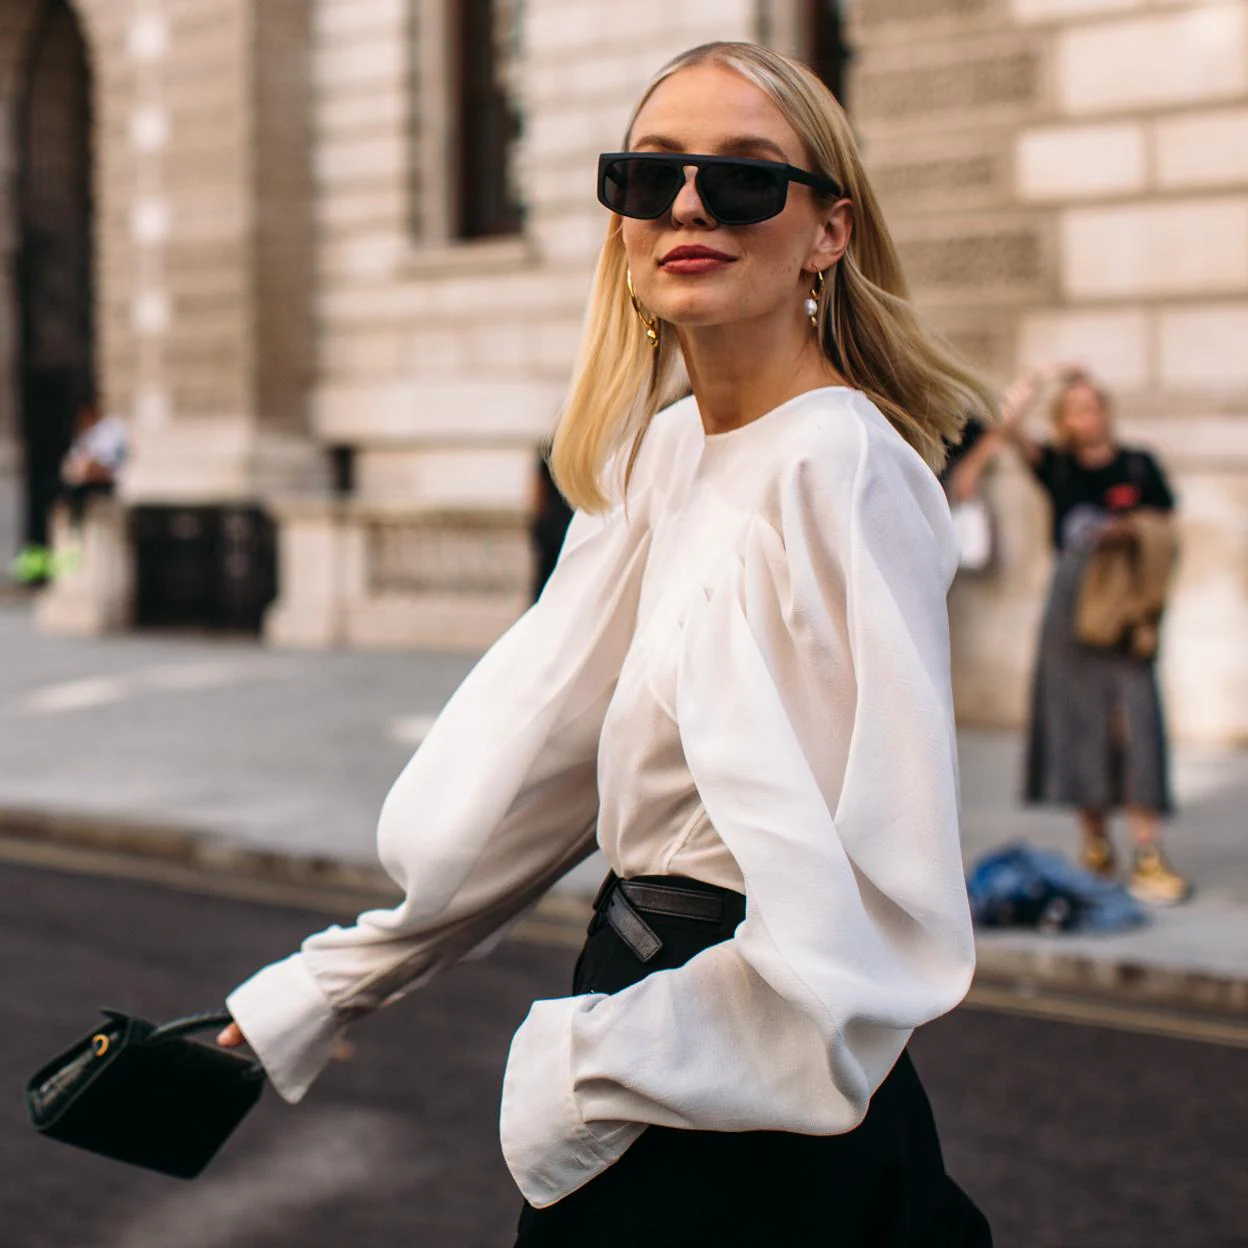 Las blusas de Zara son la que necesitábamos conseguir unos estilismos cómodos e impecables | Mujer Hoy